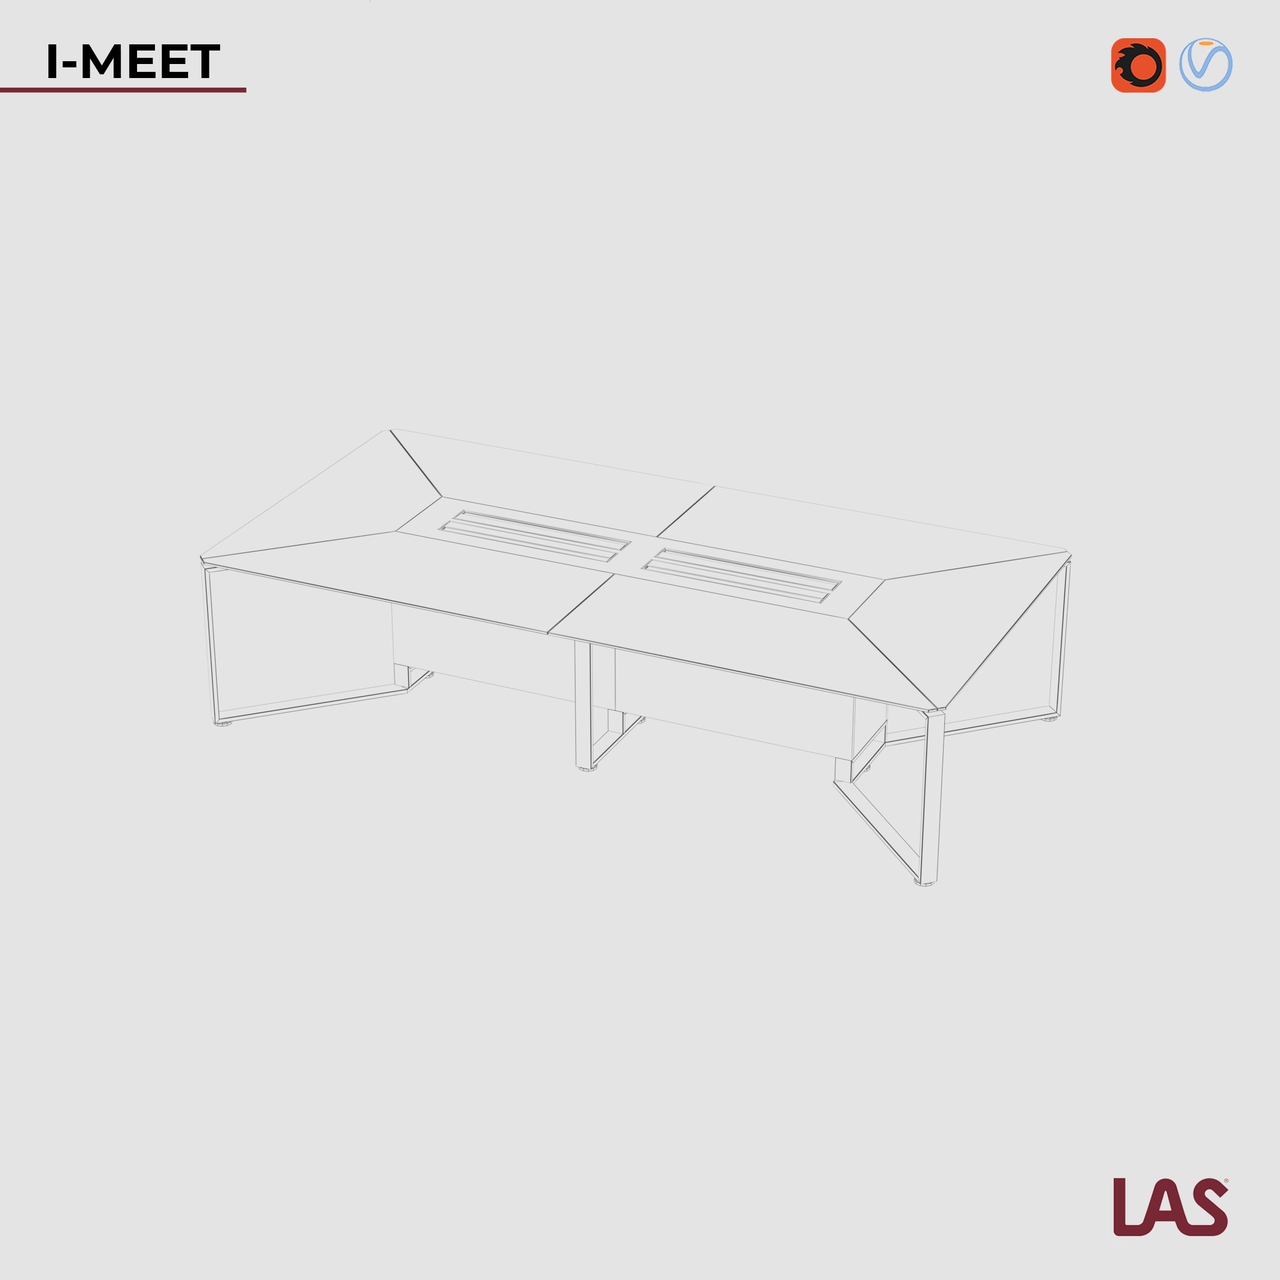 Превью G 3D-модели прямоугольного переговорного стола со стеклянной столешницей на 12 человек LAS I-Meet 146619